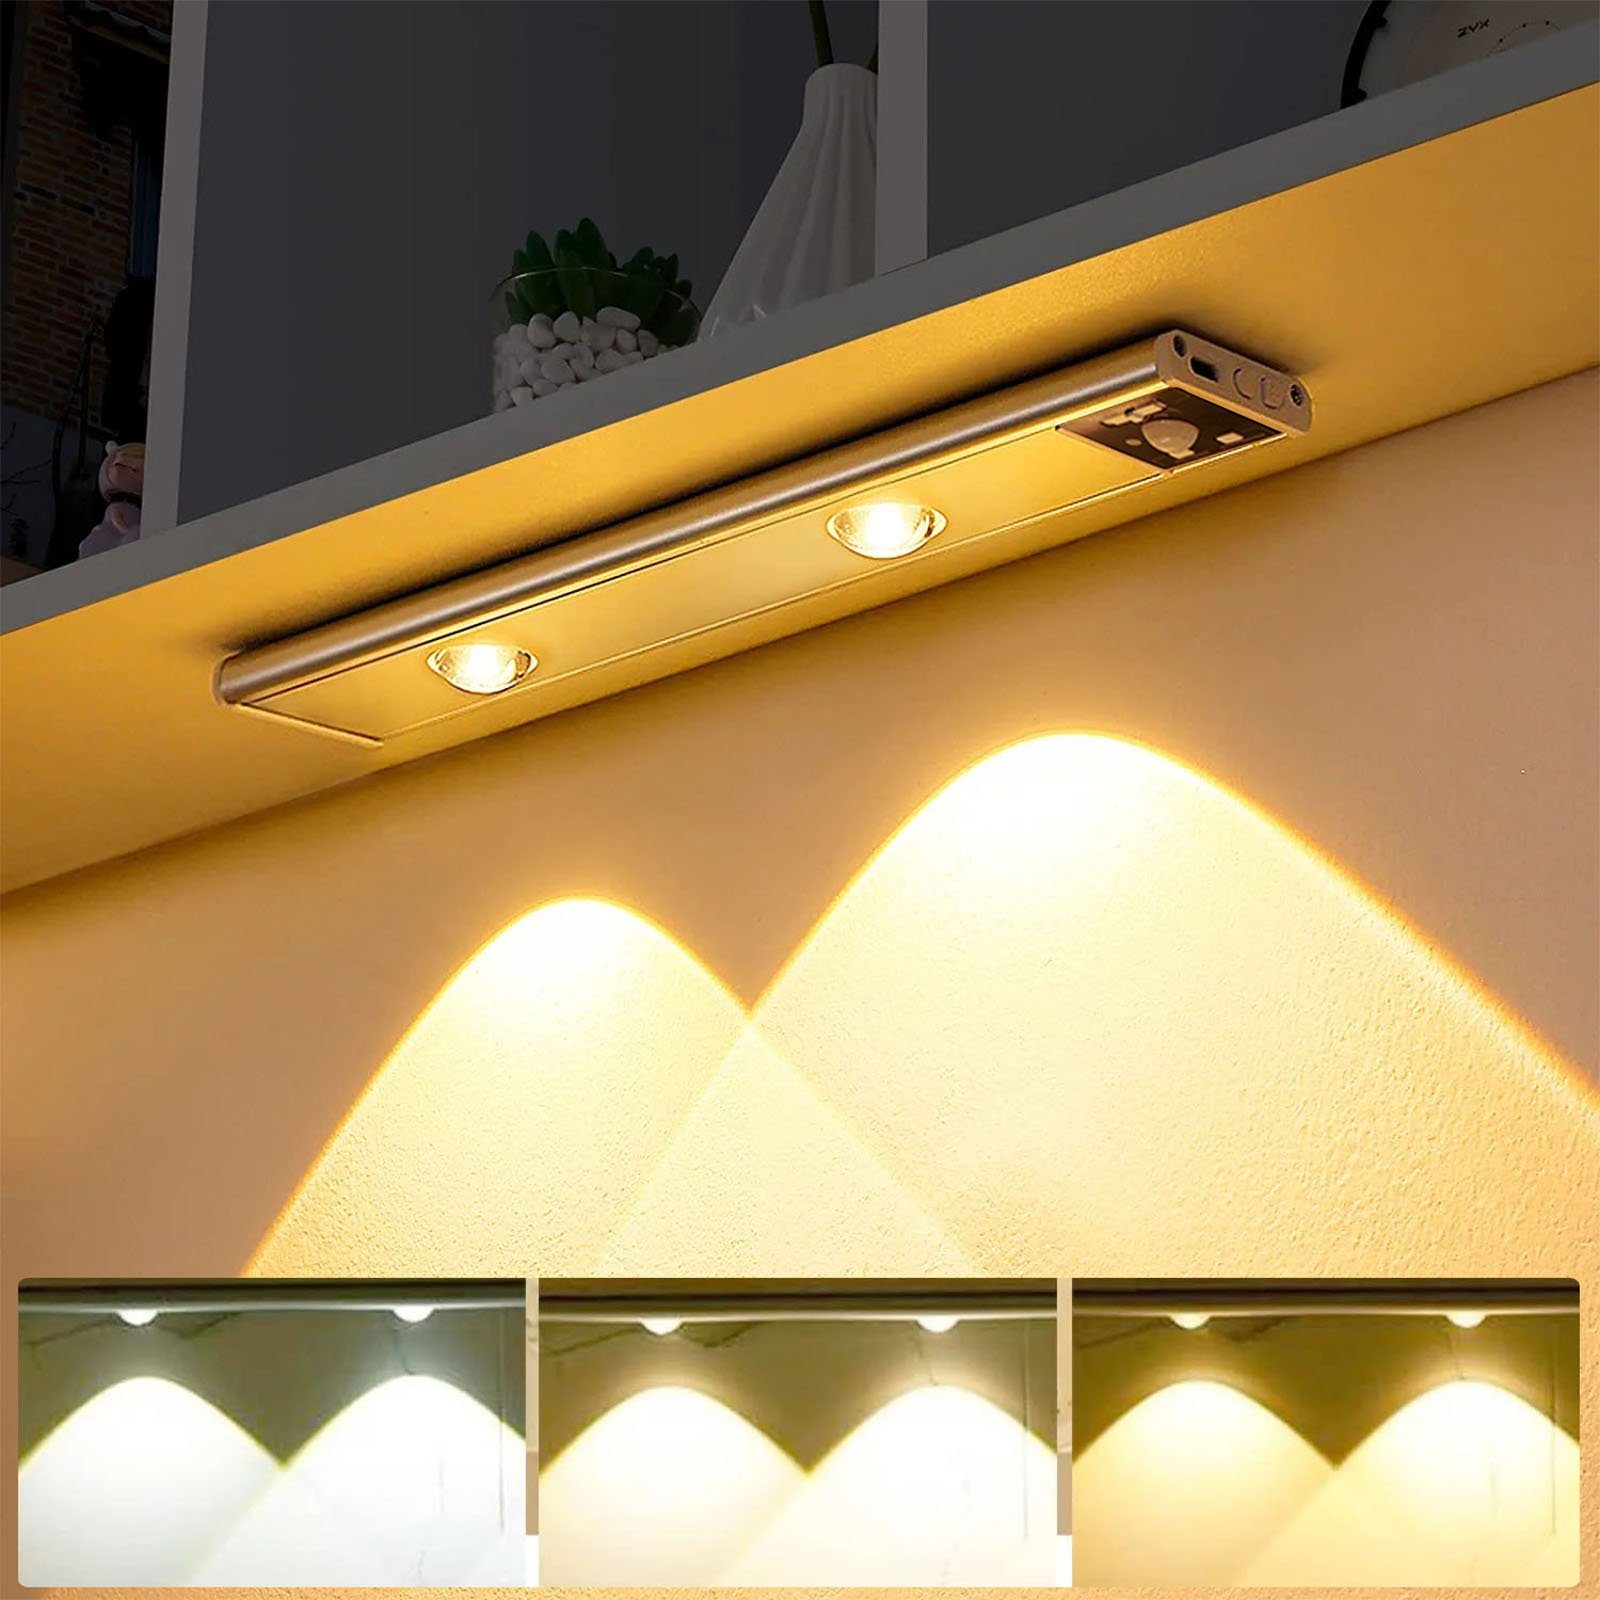 MUPOO LED Unterbauleuchte Schrankbeleuchtung mit Bewegungsmelder, Unterbauleuchte Küche, LED Sensor Licht, 3 Farben Dimmbar, USB Aufladbar